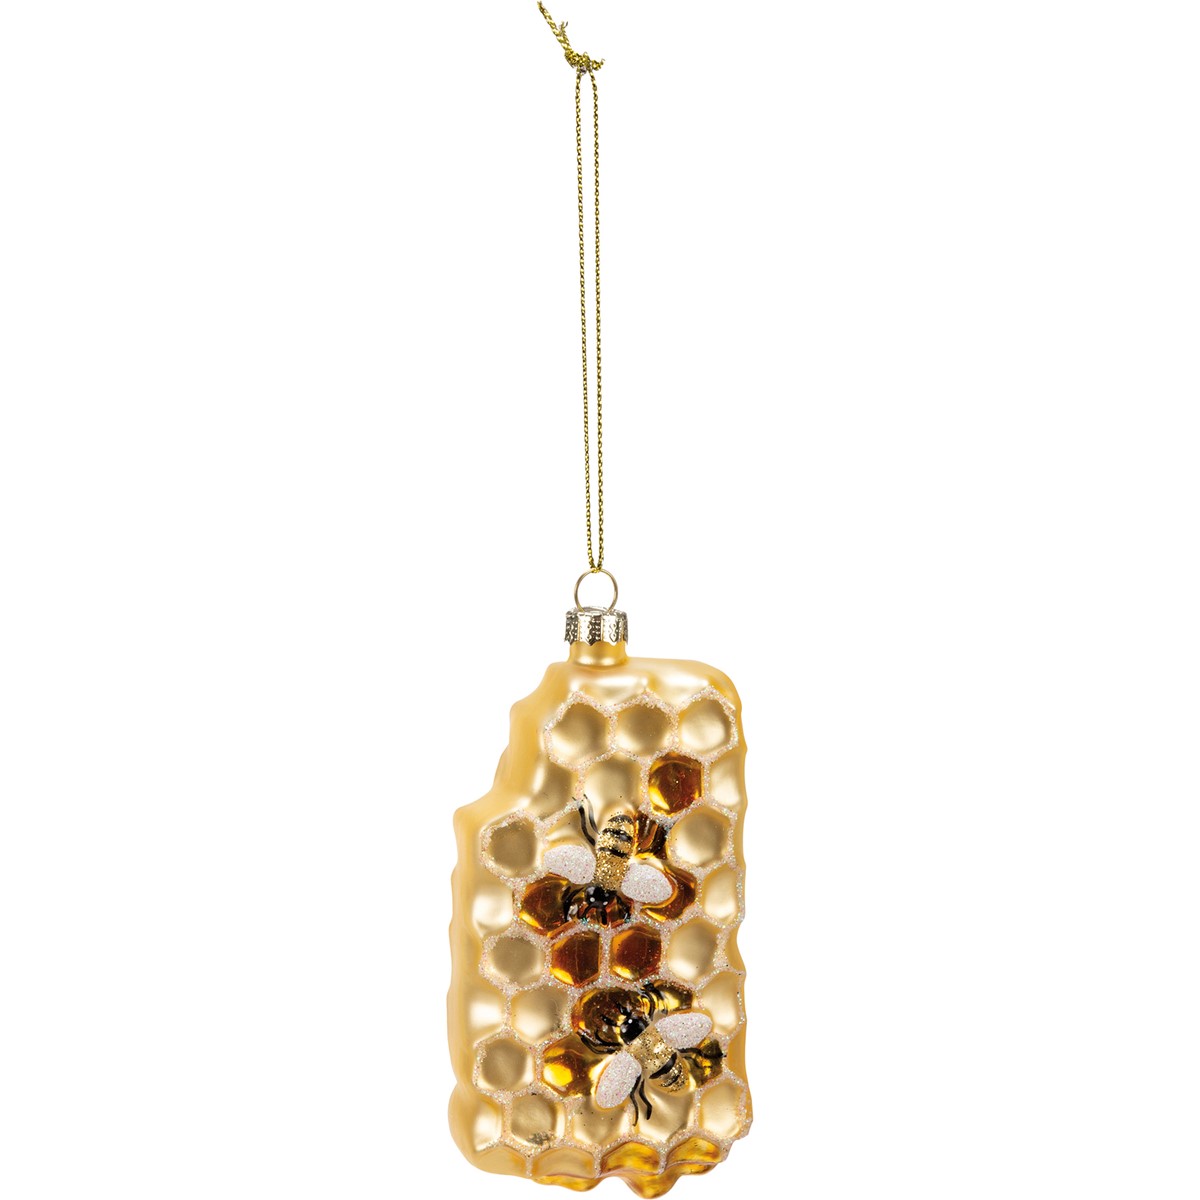 Glass Honeycomb Ornament - Glass, Metal, Glitter